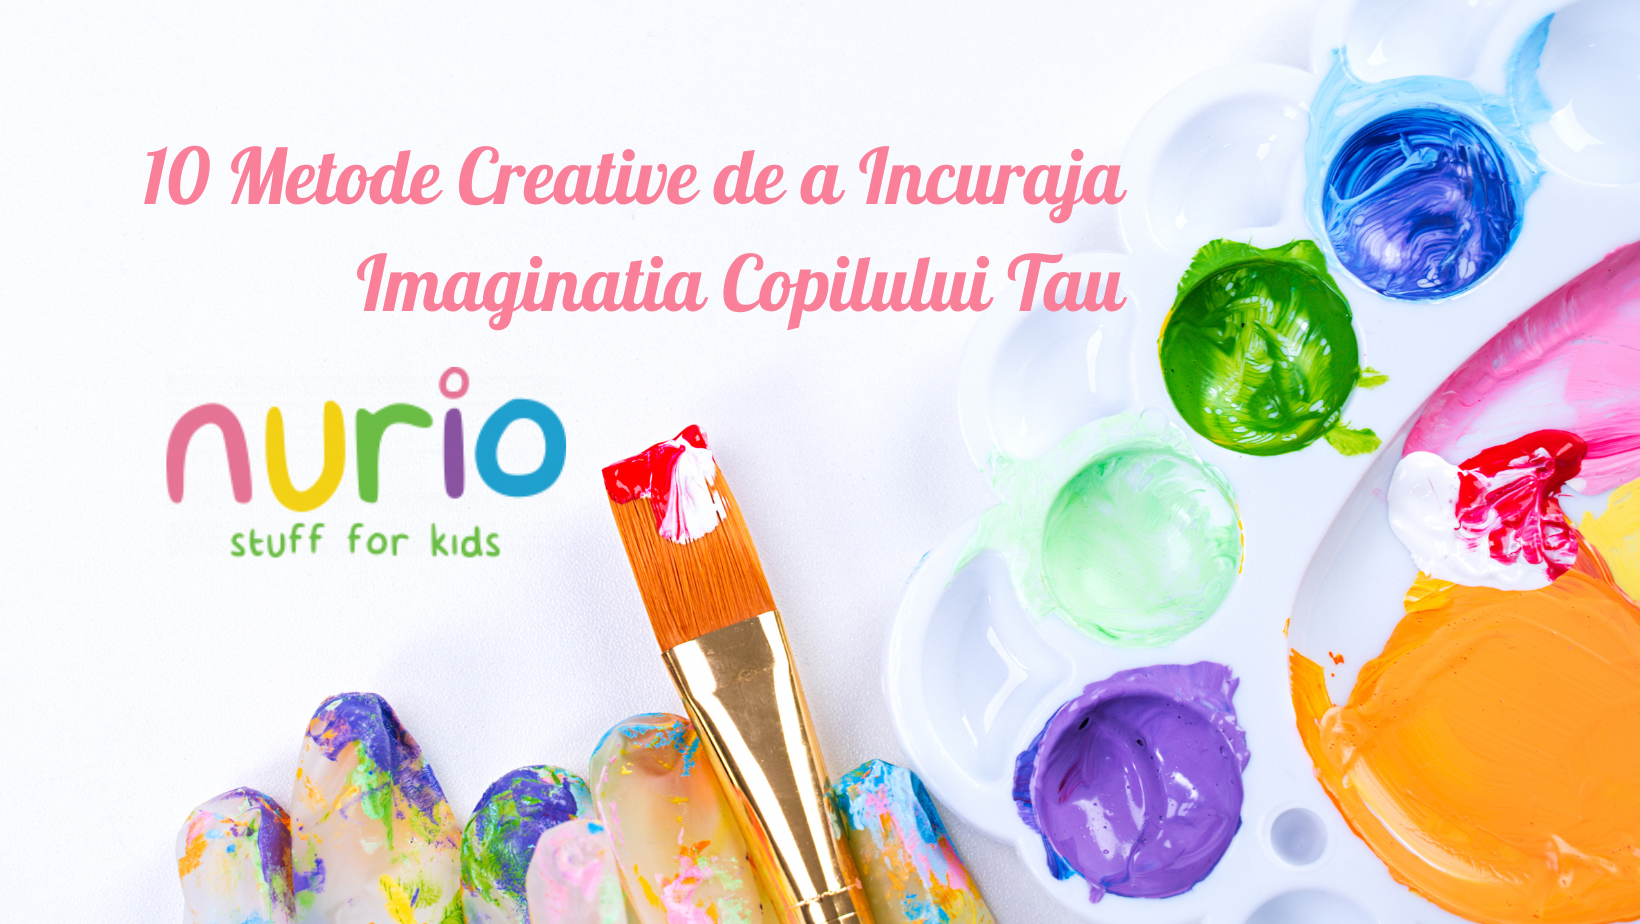 10 Metode Creative de a Incuraja Imaginatia Copilului Tau